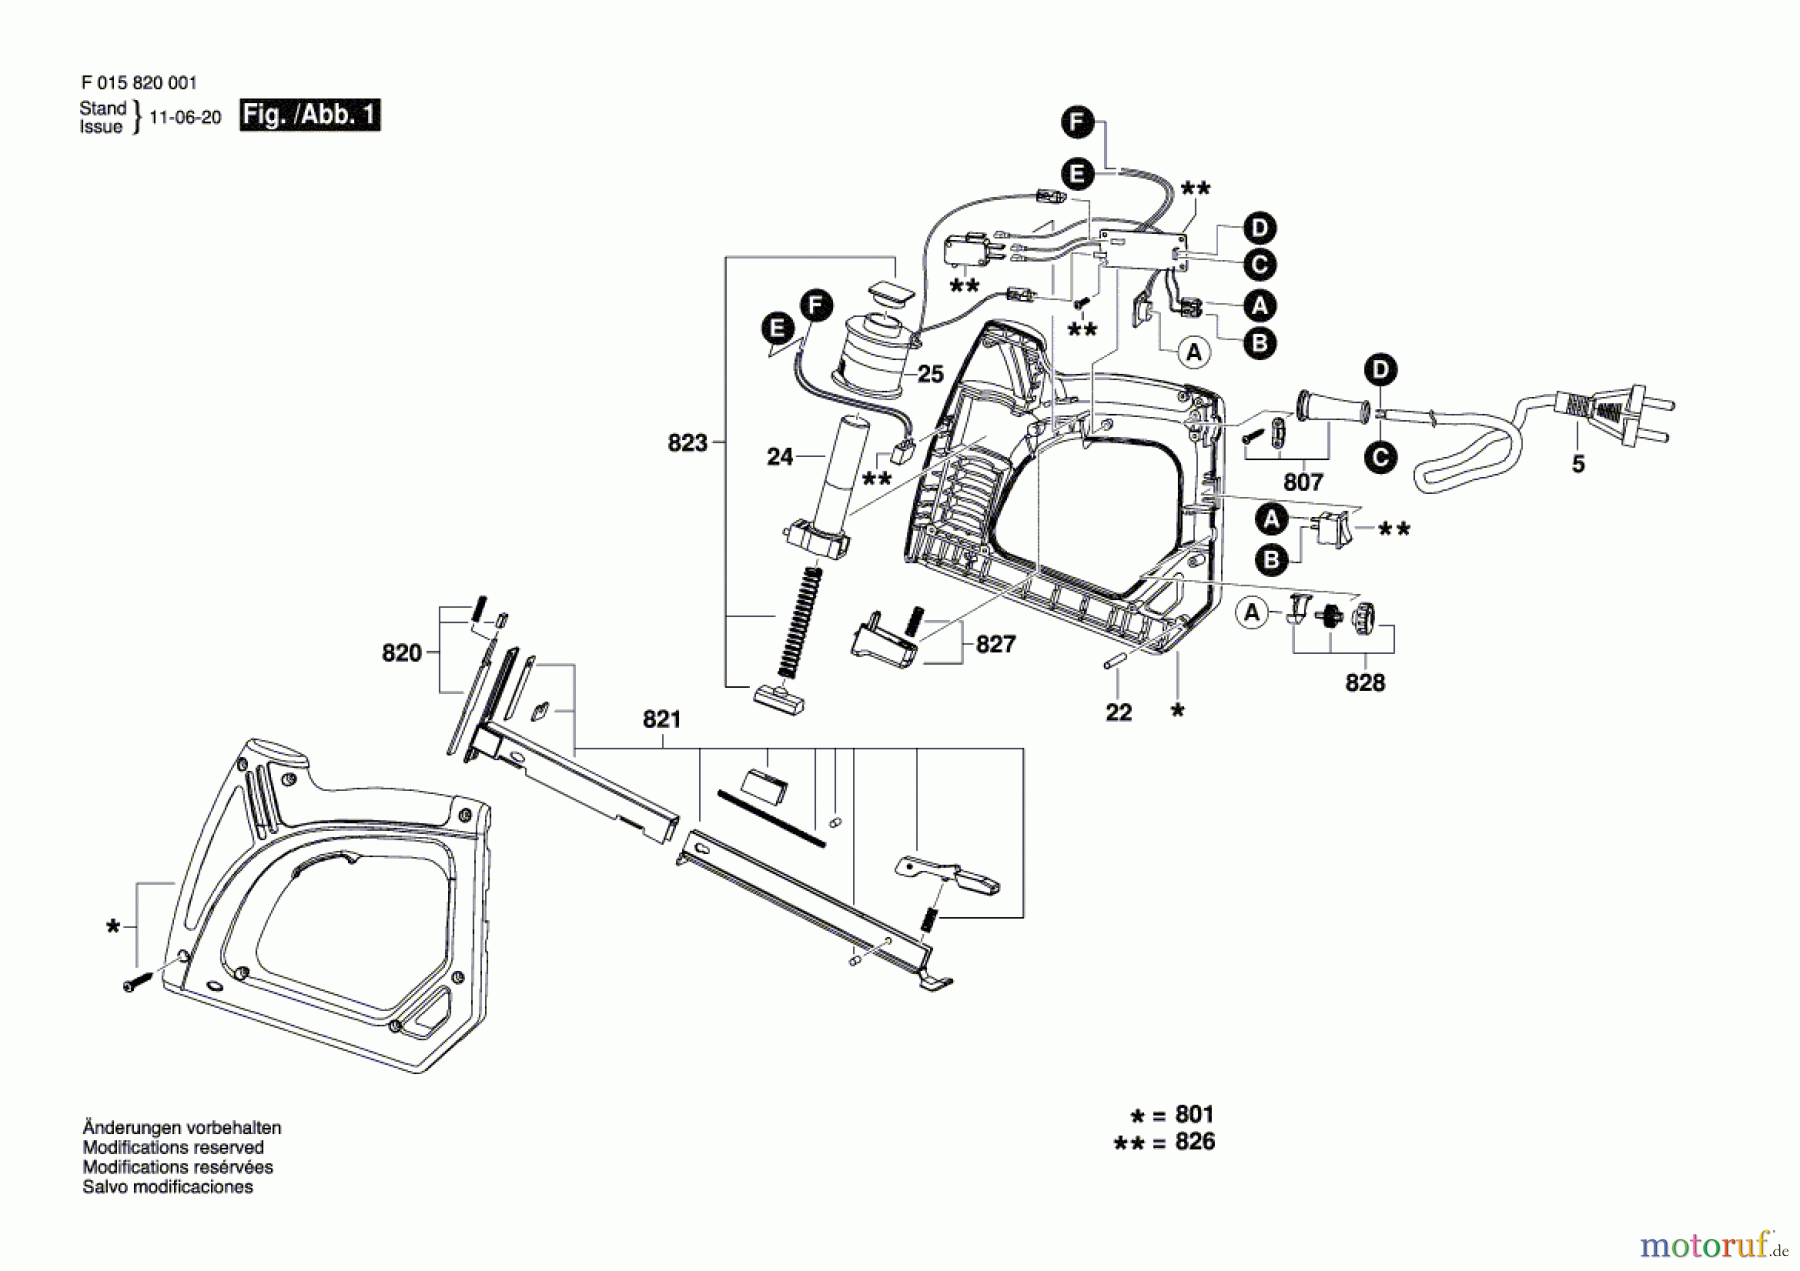  Bosch Werkzeug Hw-Tacker 8200 Seite 1